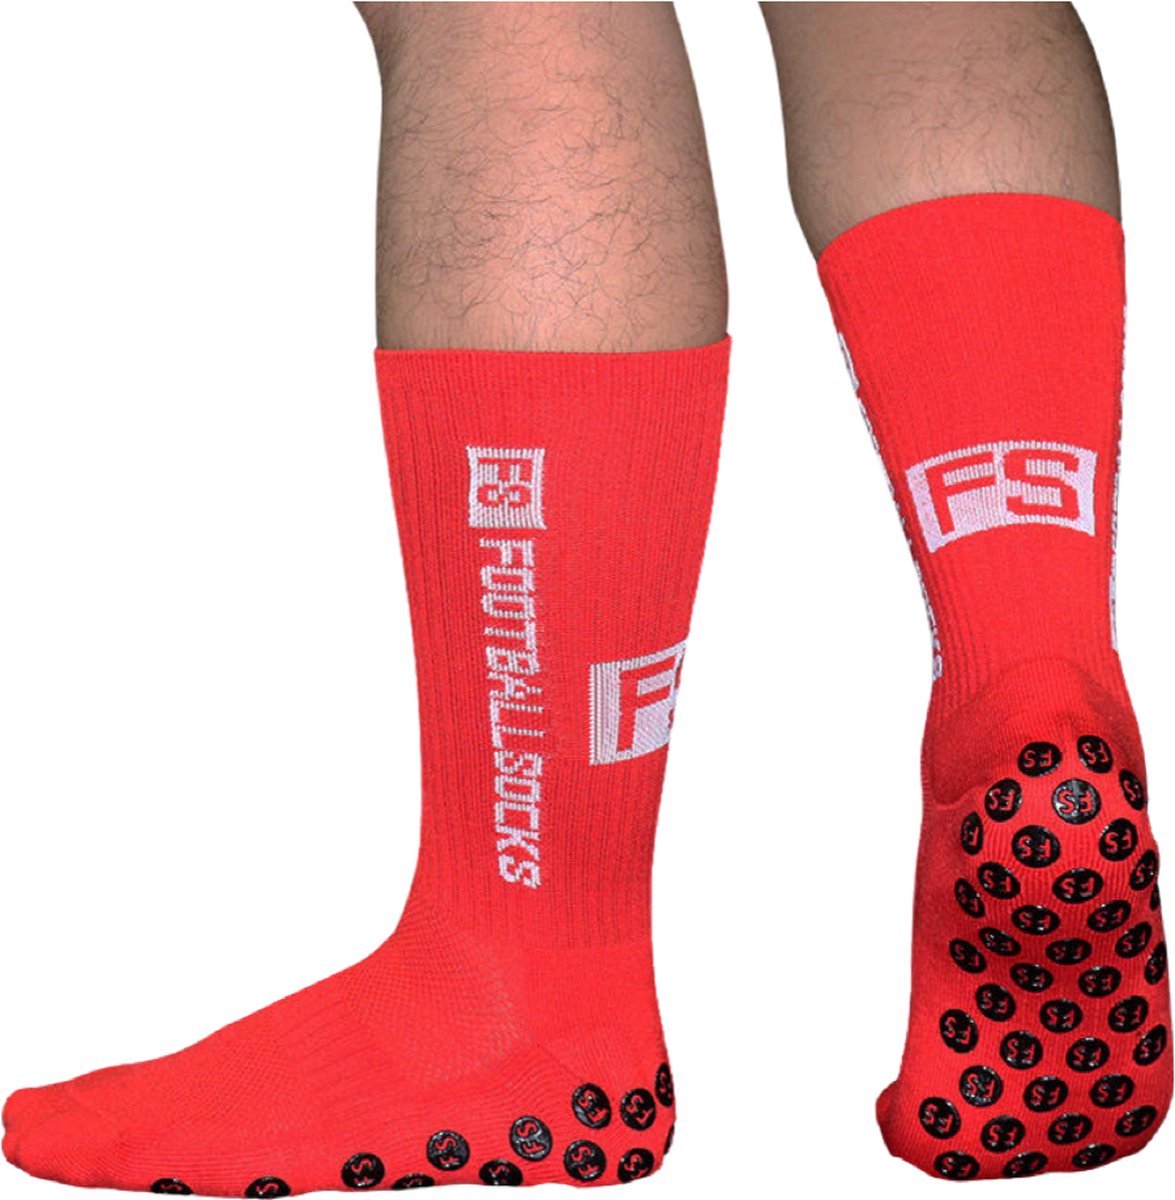 Footballsocks® Gripsokken - Gripsokken Voetbal - Grip Socks - One Size - Anti Slip - Gripsokken Rood